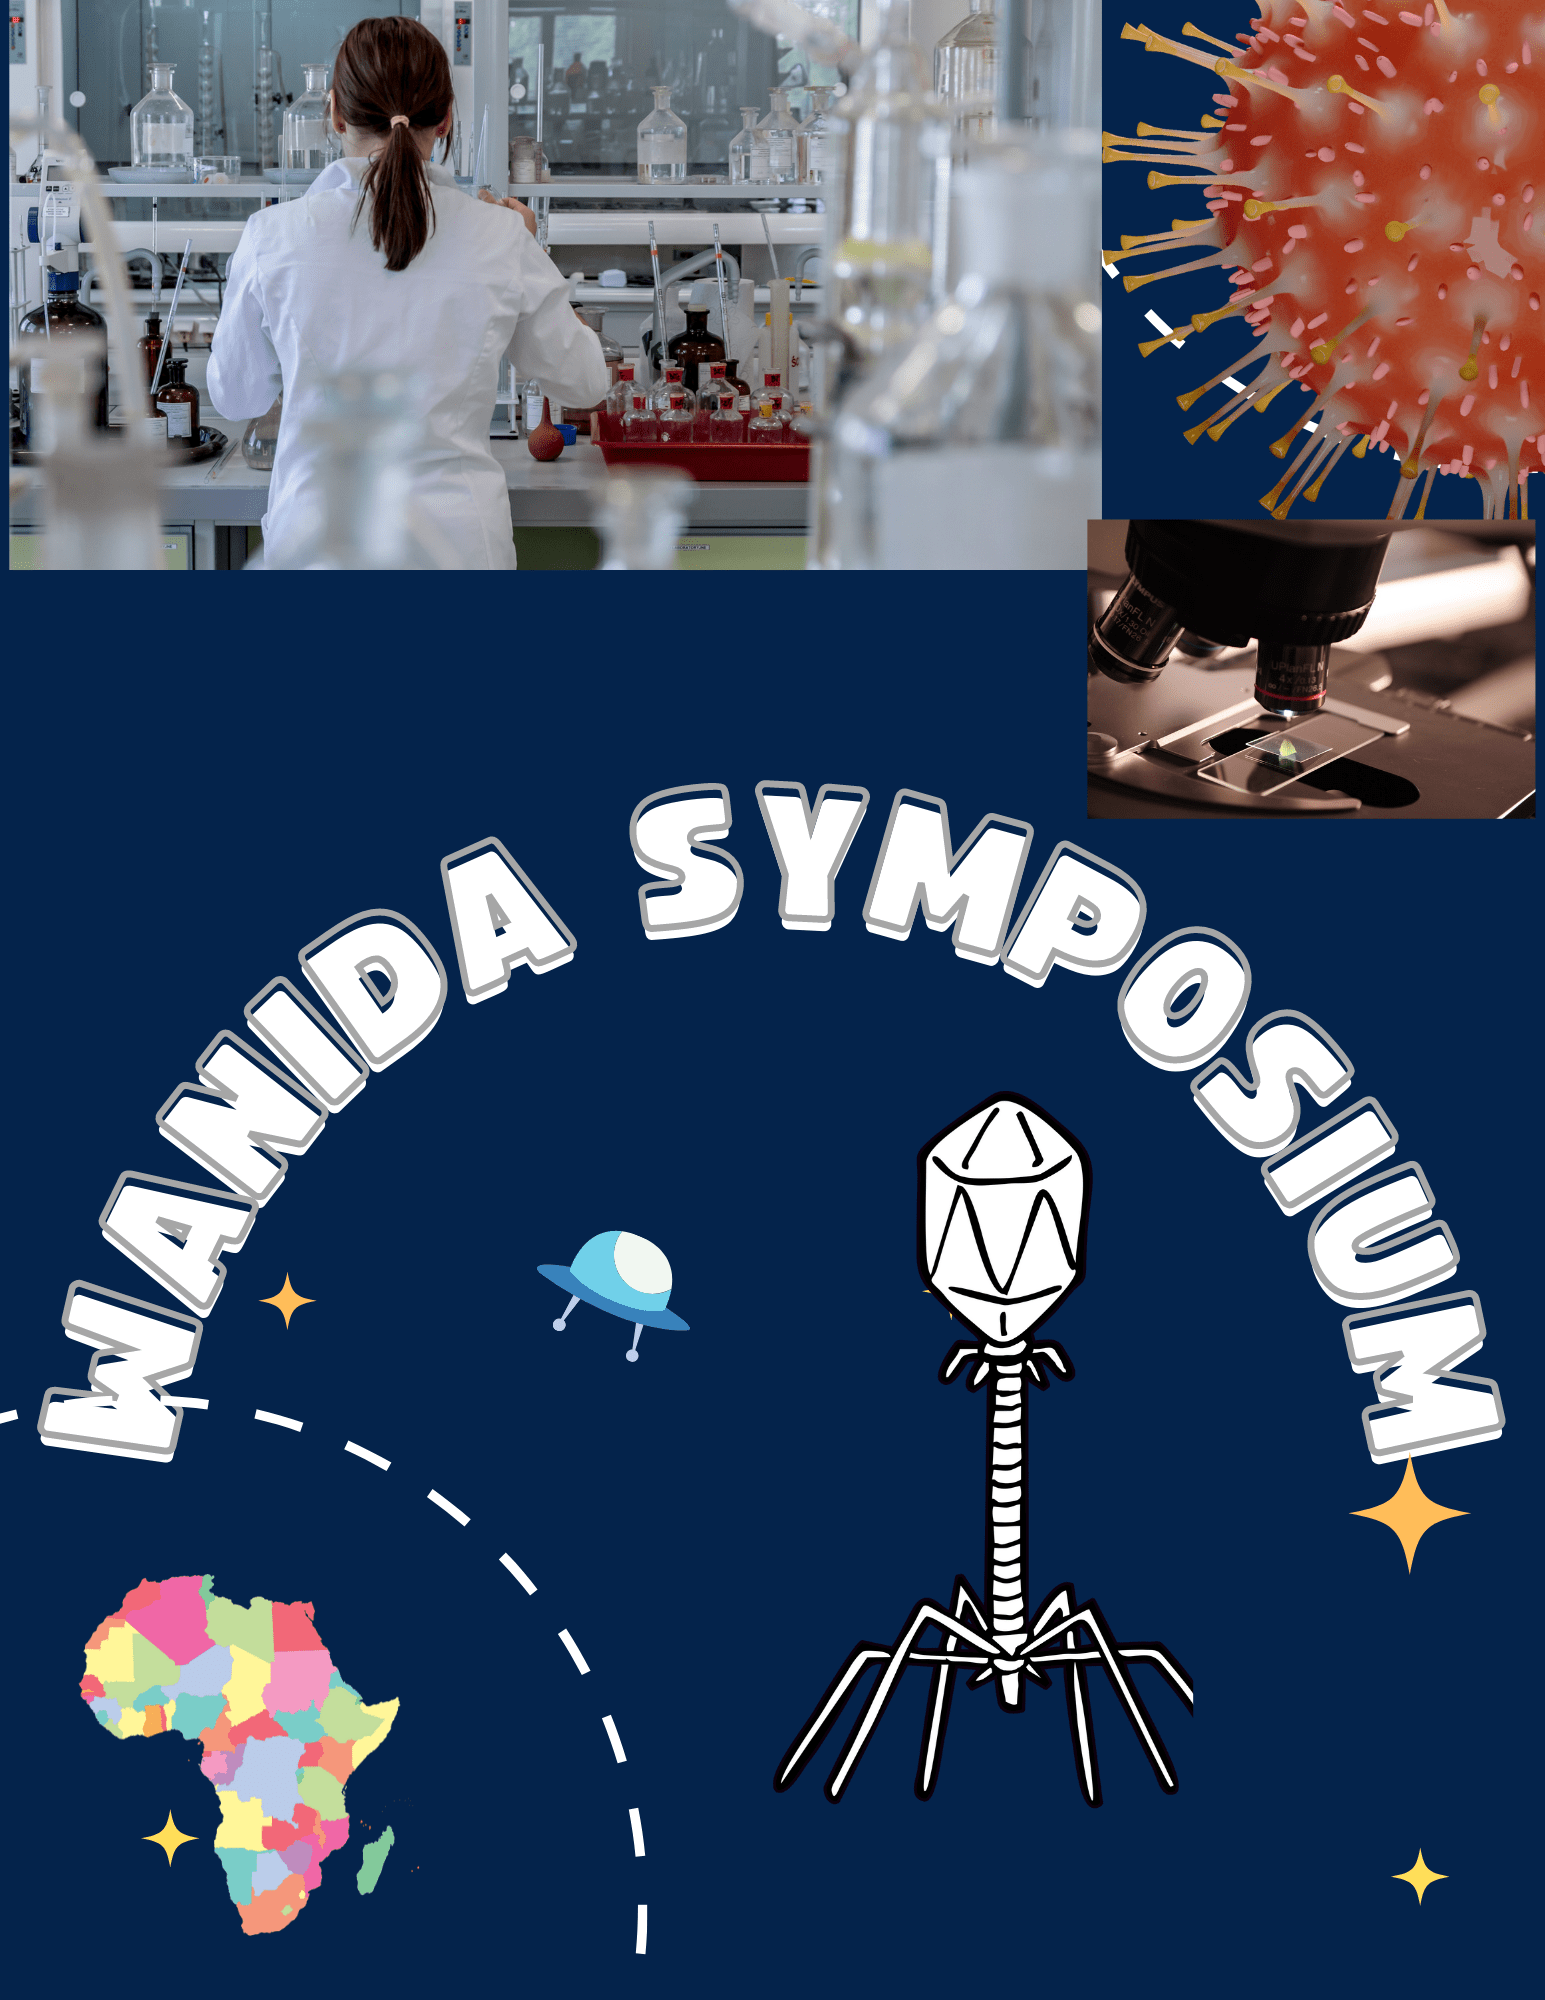 WANIDA Symposium poster